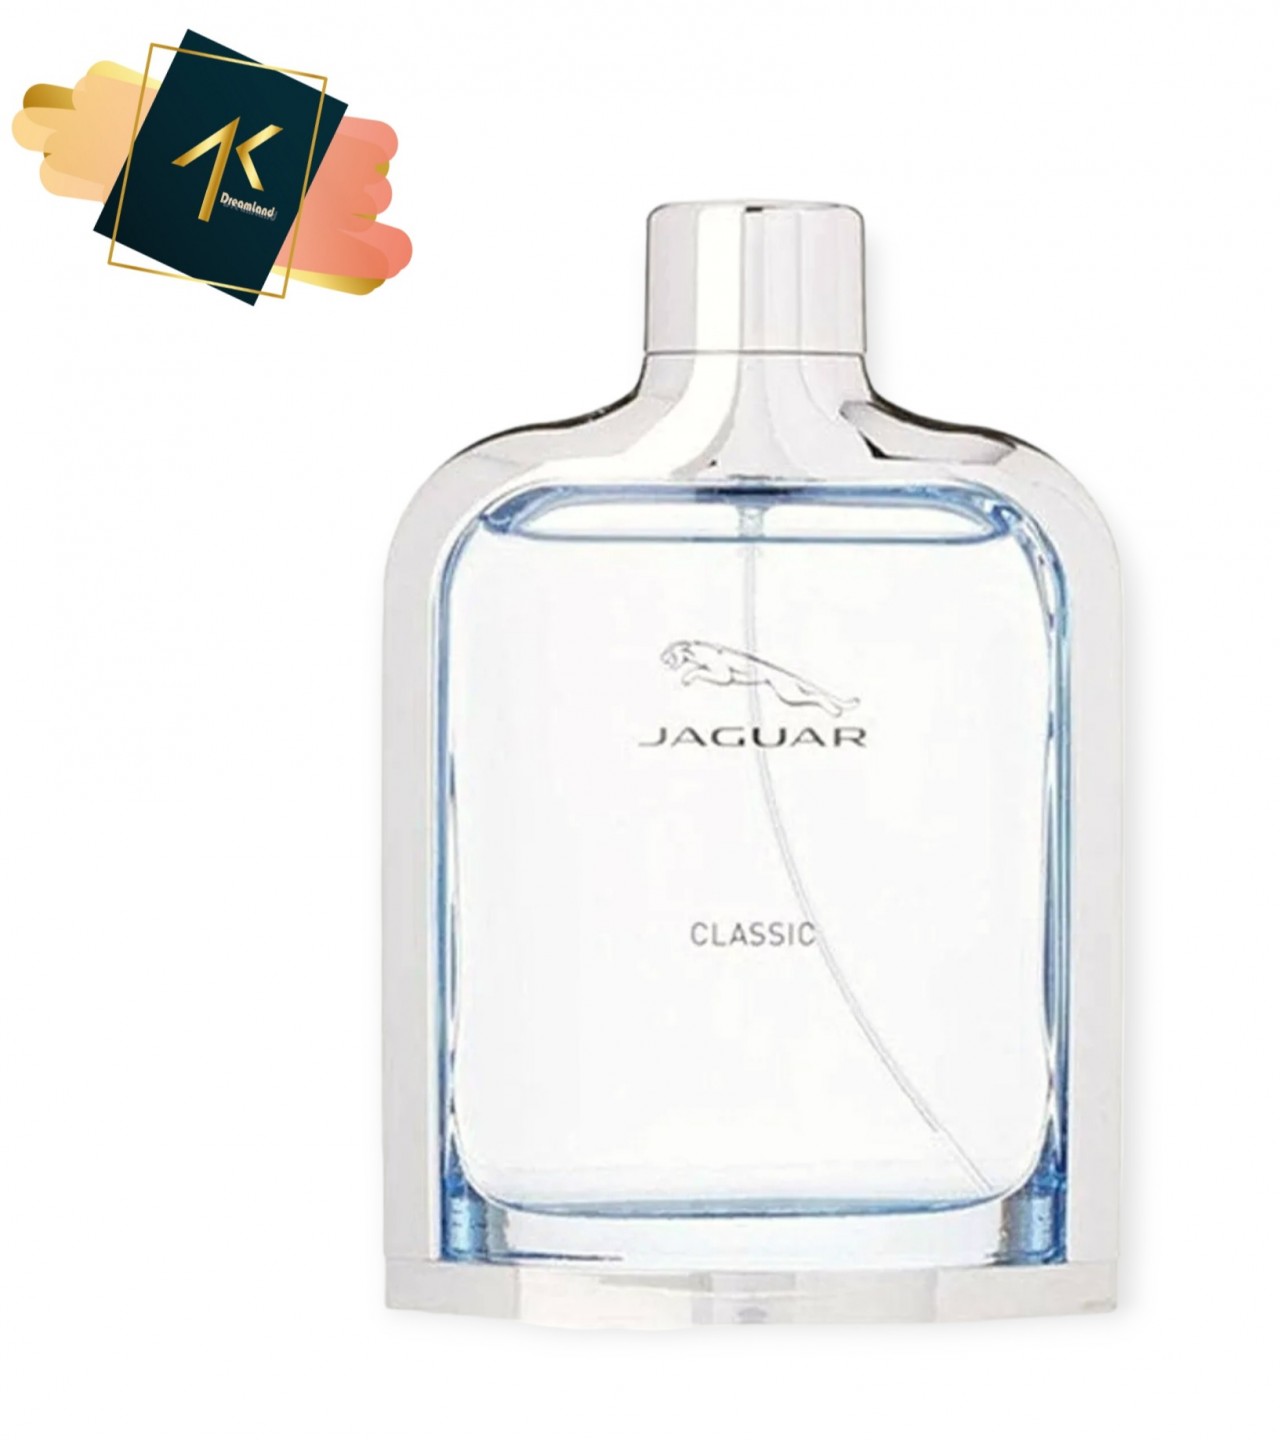 Jaguar Classic Perfume Eau De Toilette  for Men and Women-100ml